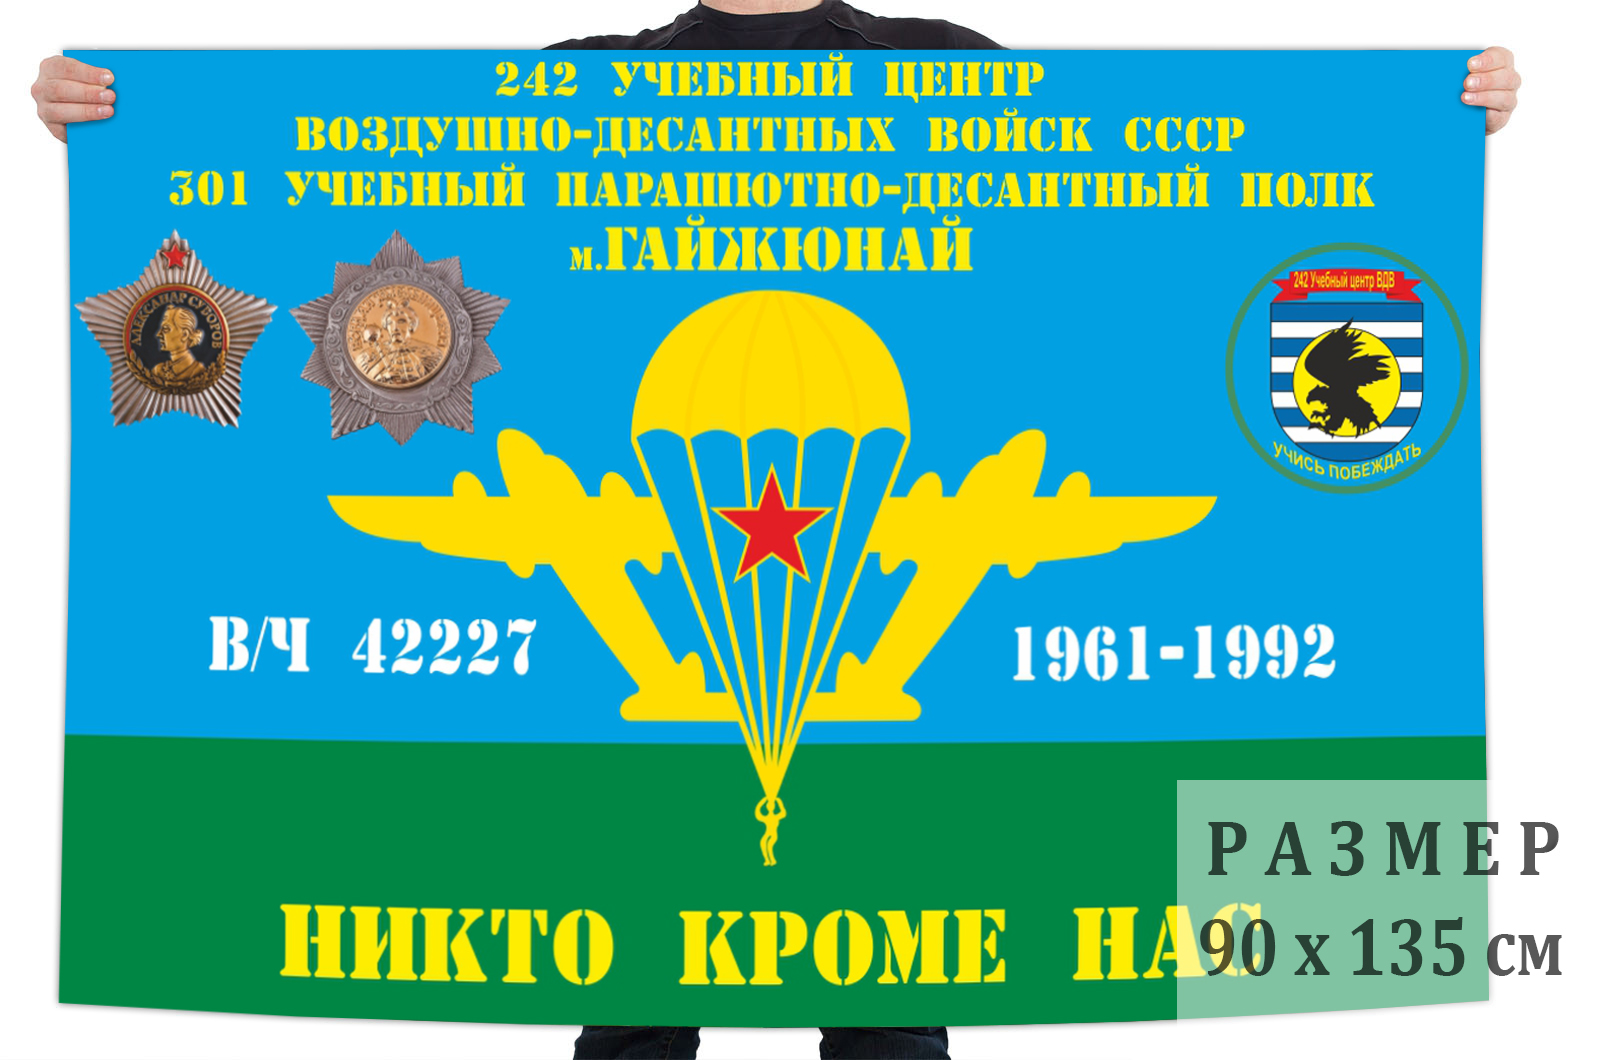 Заказать флаг 301-й учебный парашютно-десантный полк 242 УЦ ВДВ